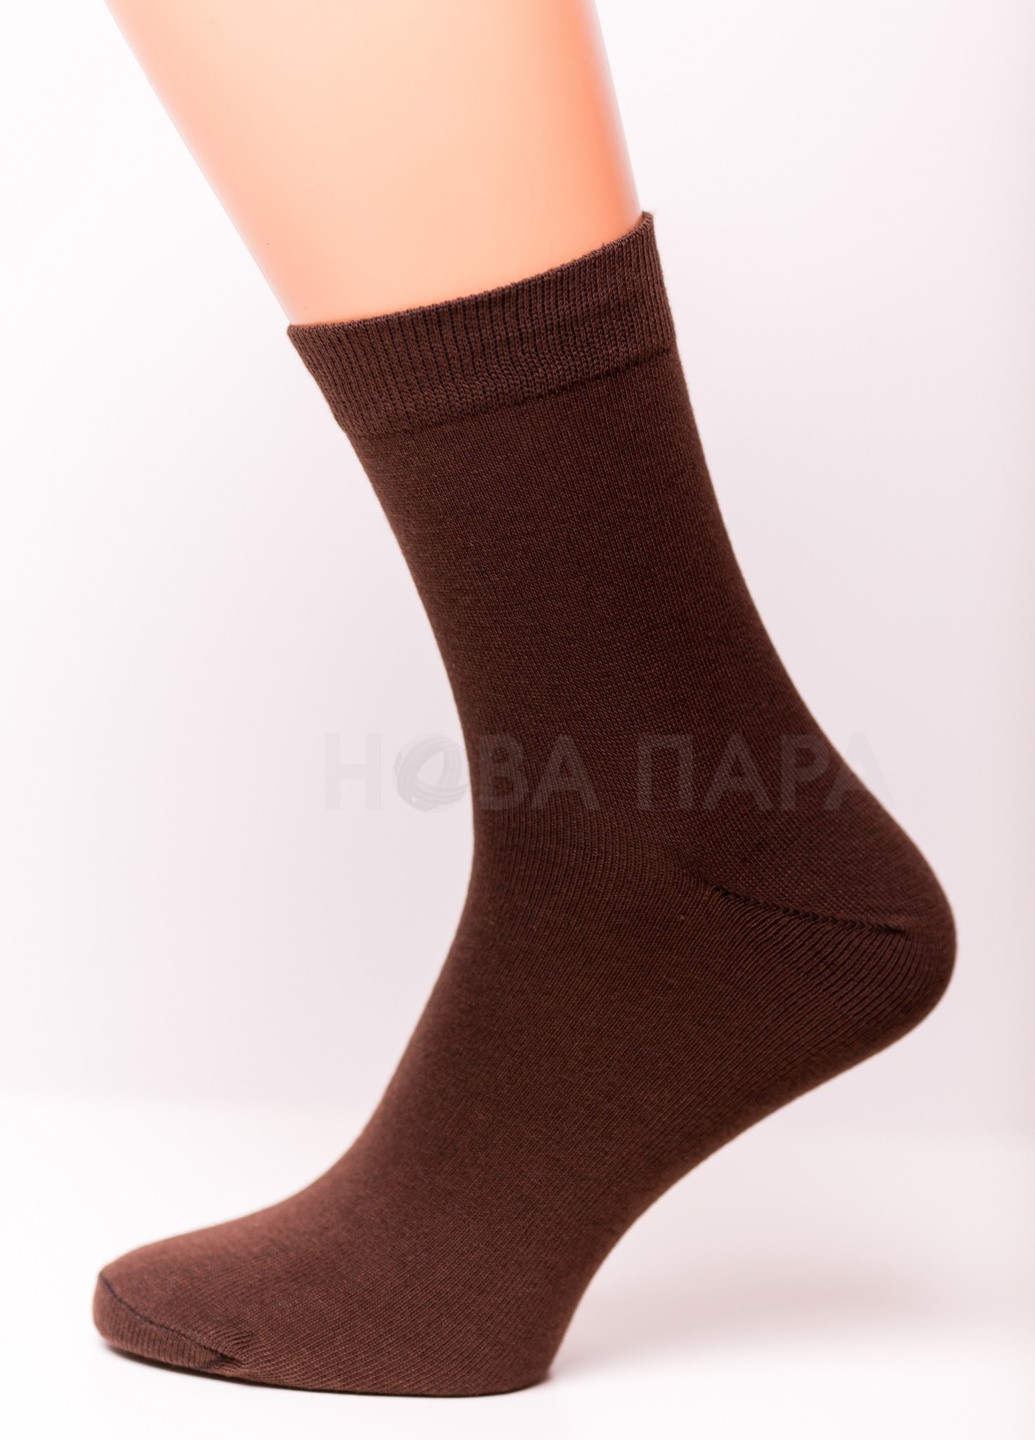 Шкарпетки чоловічі ТМ "Нова пара", 462 (в складі Акріл) НОВА ПАРА середня висота (257061989)